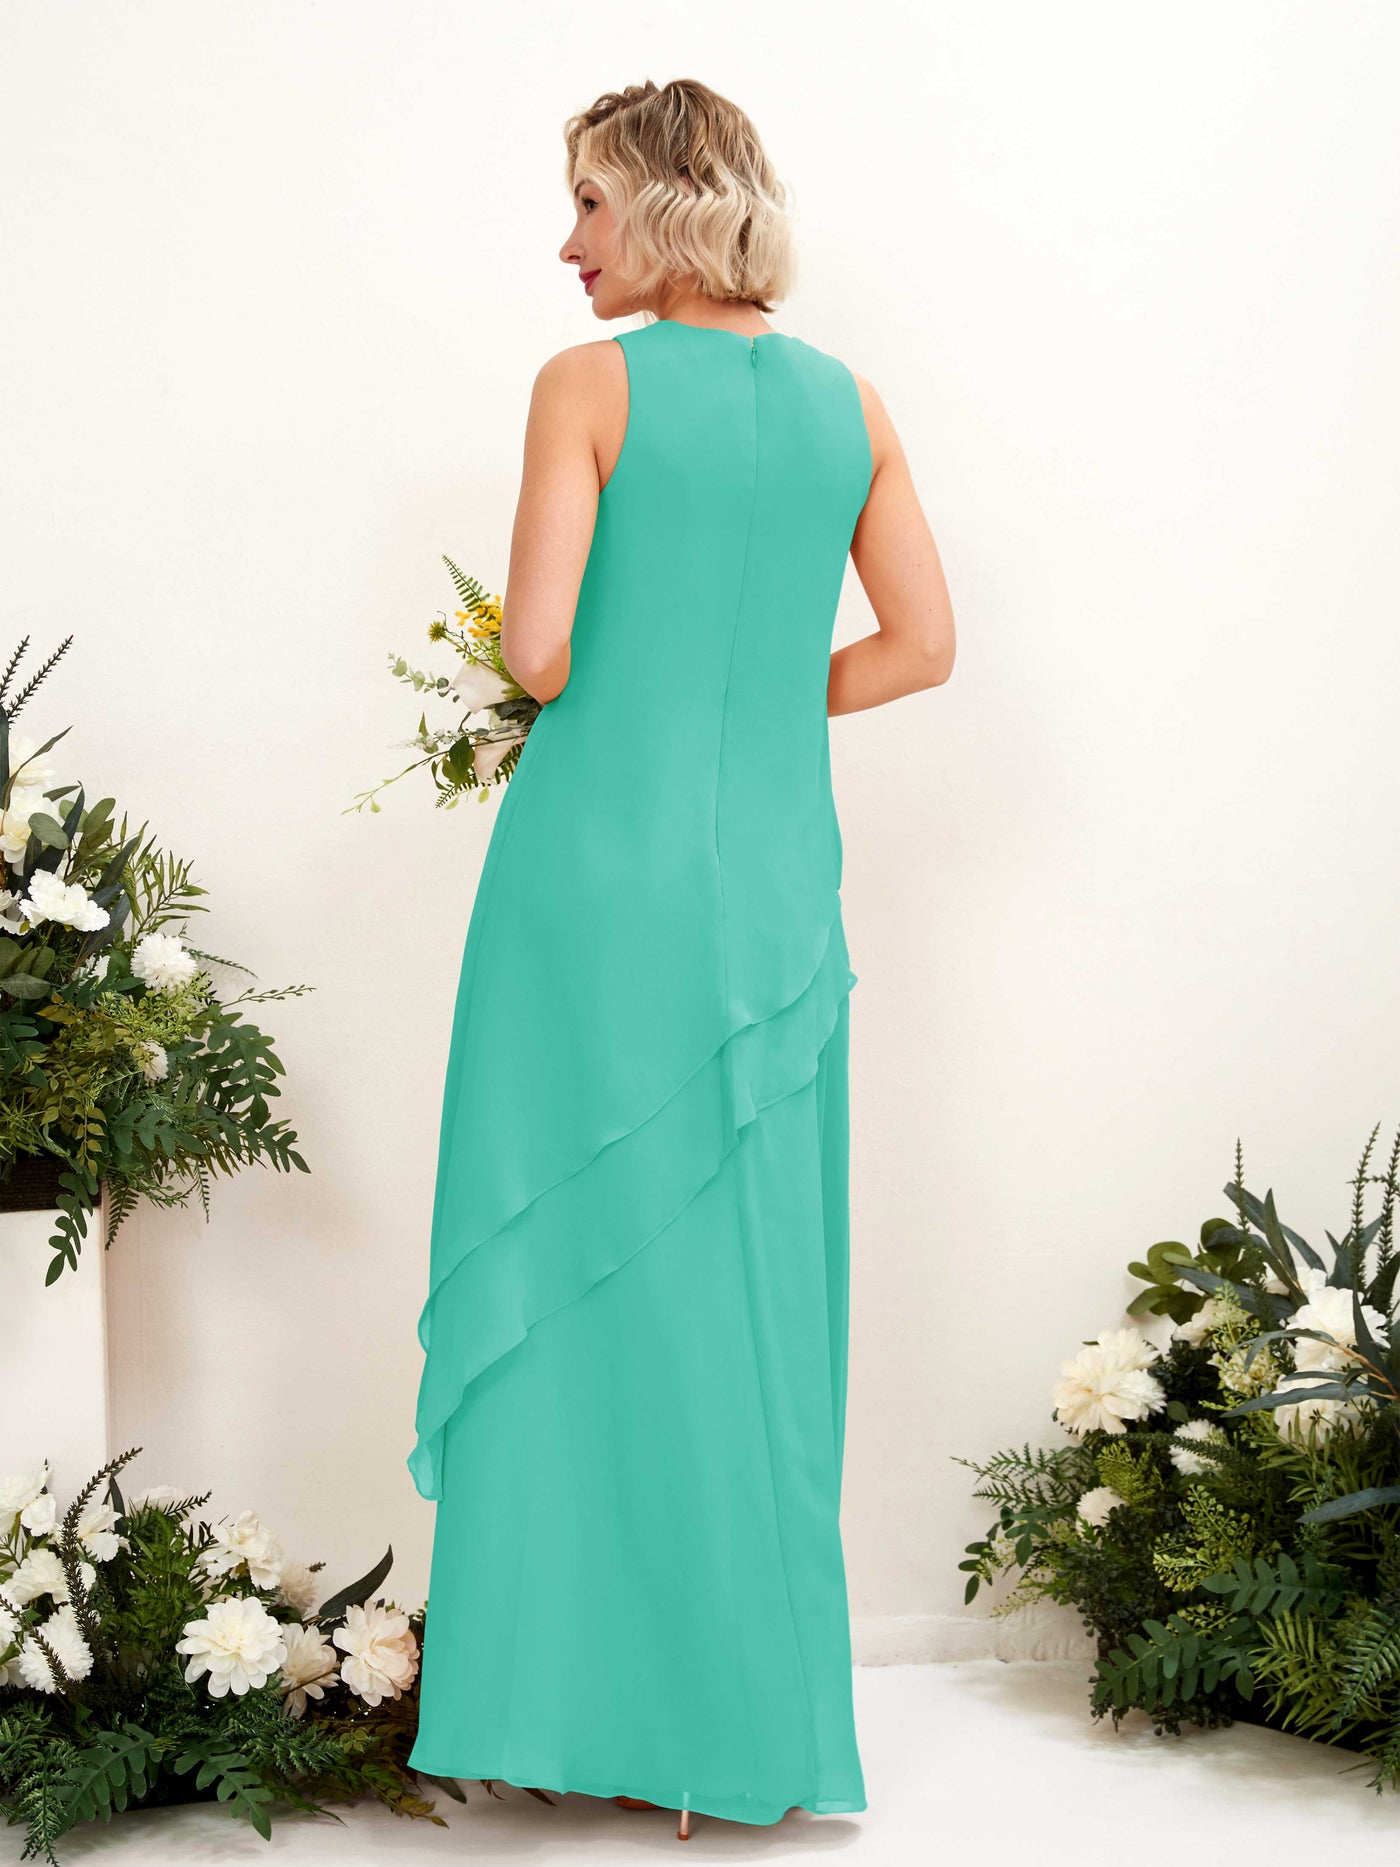 Round Sleeveless Chiffon Bridesmaid Dress - Tiffany (81222332)#color_tiffany